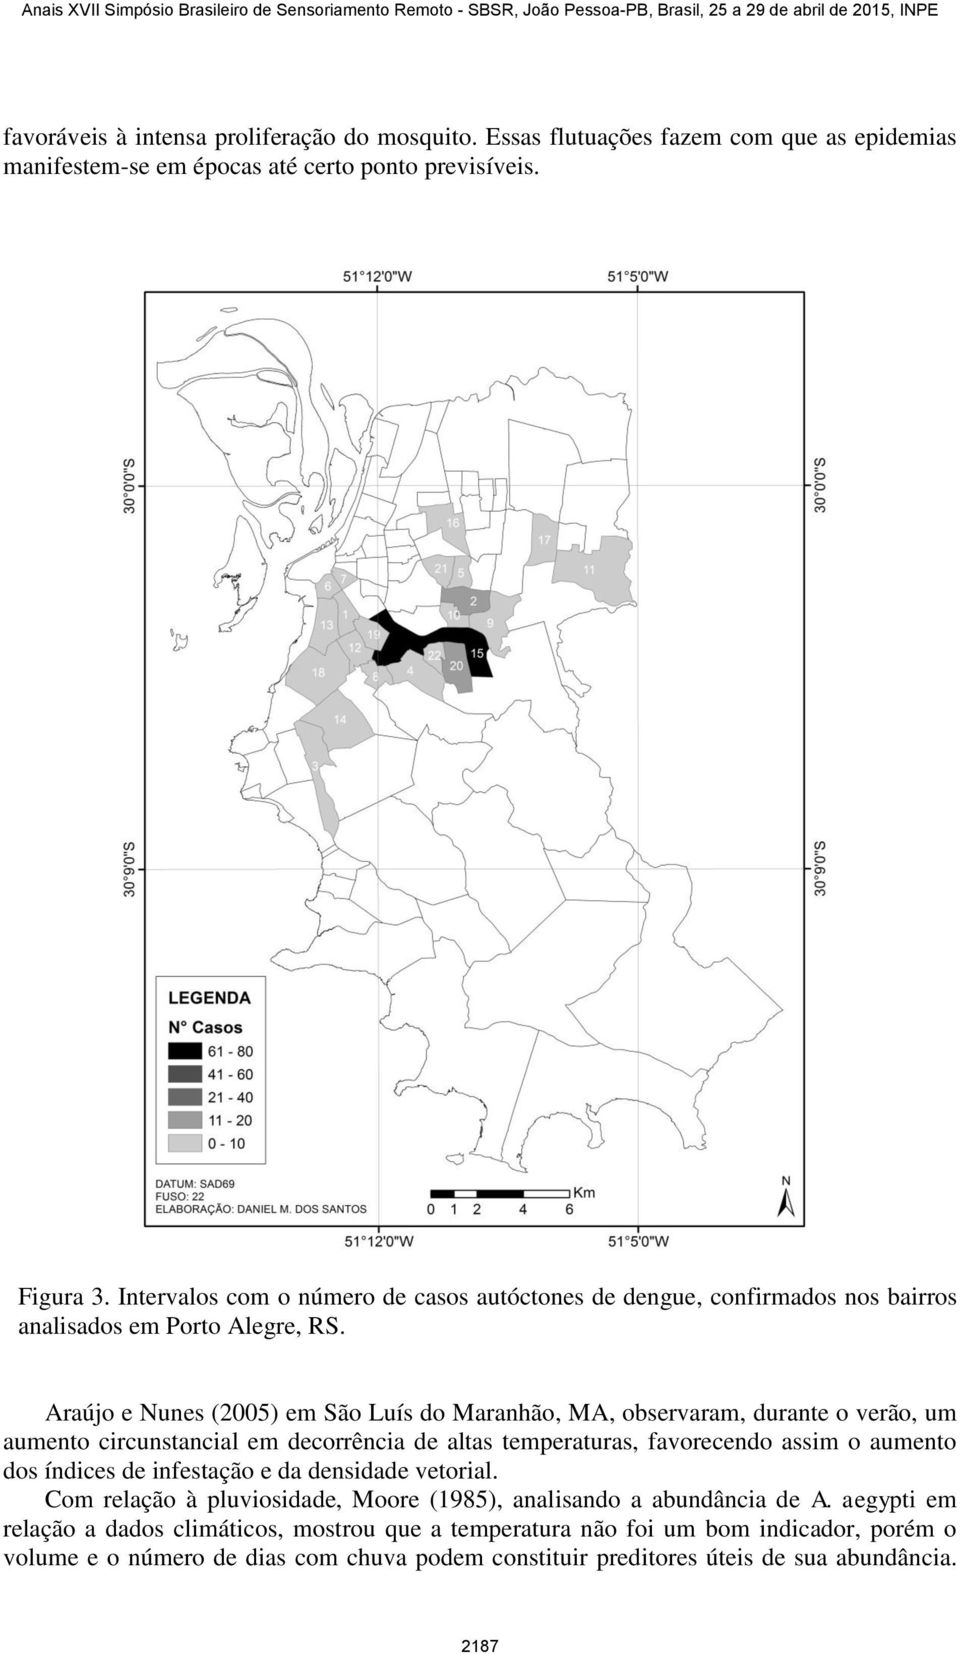 Araújo e Nunes (2005) em São Luís do Maranhão, MA, observaram, durante o verão, um aumento circunstancial em decorrência de altas temperaturas, favorecendo assim o aumento dos índices de